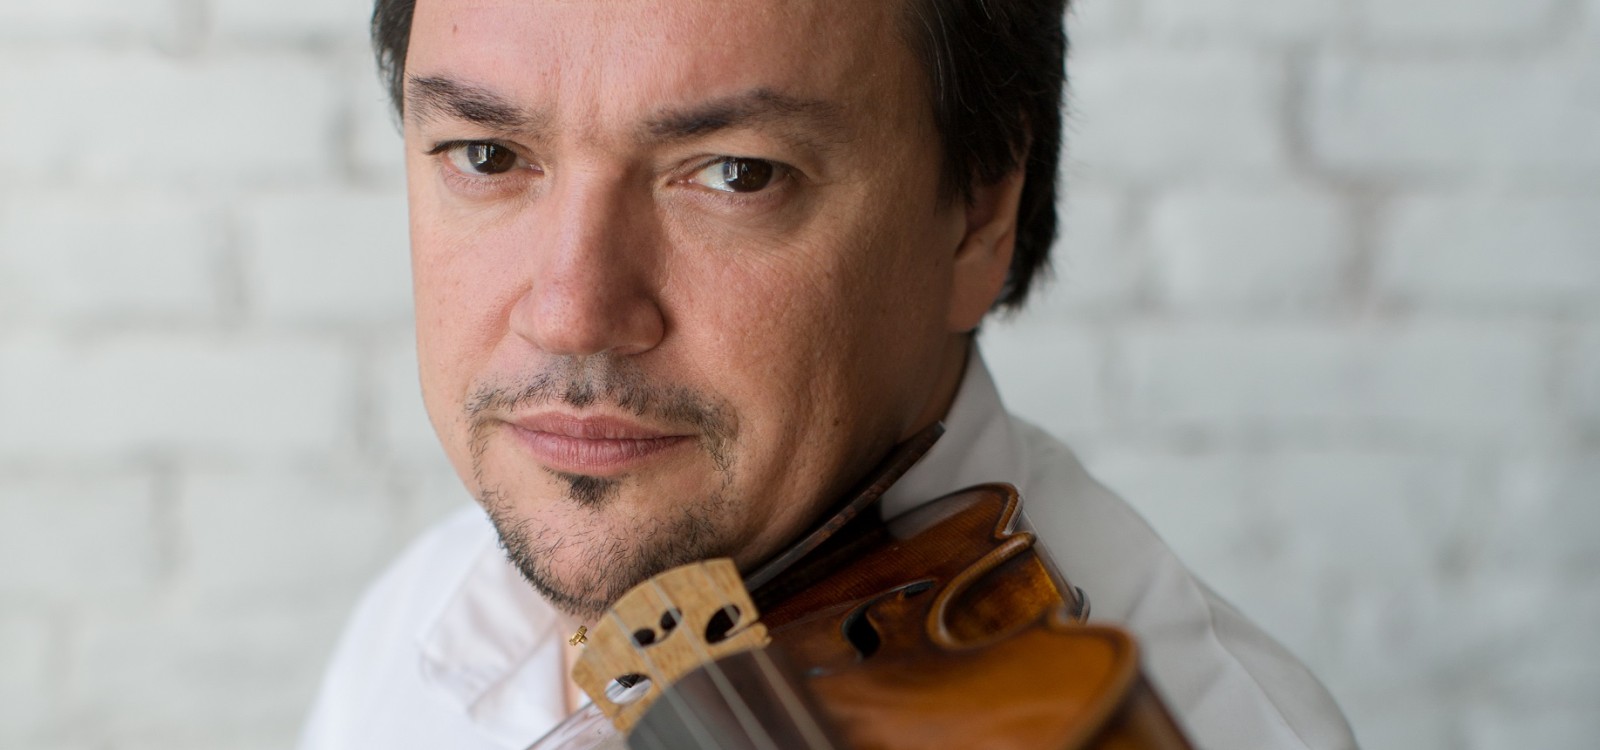 Chichon dirige a la Orquesta Filarmónica de Gran Canaria la Suite de Cascanueces y el Concierto para violín de Chaikovski con Sergej Krylov como solista